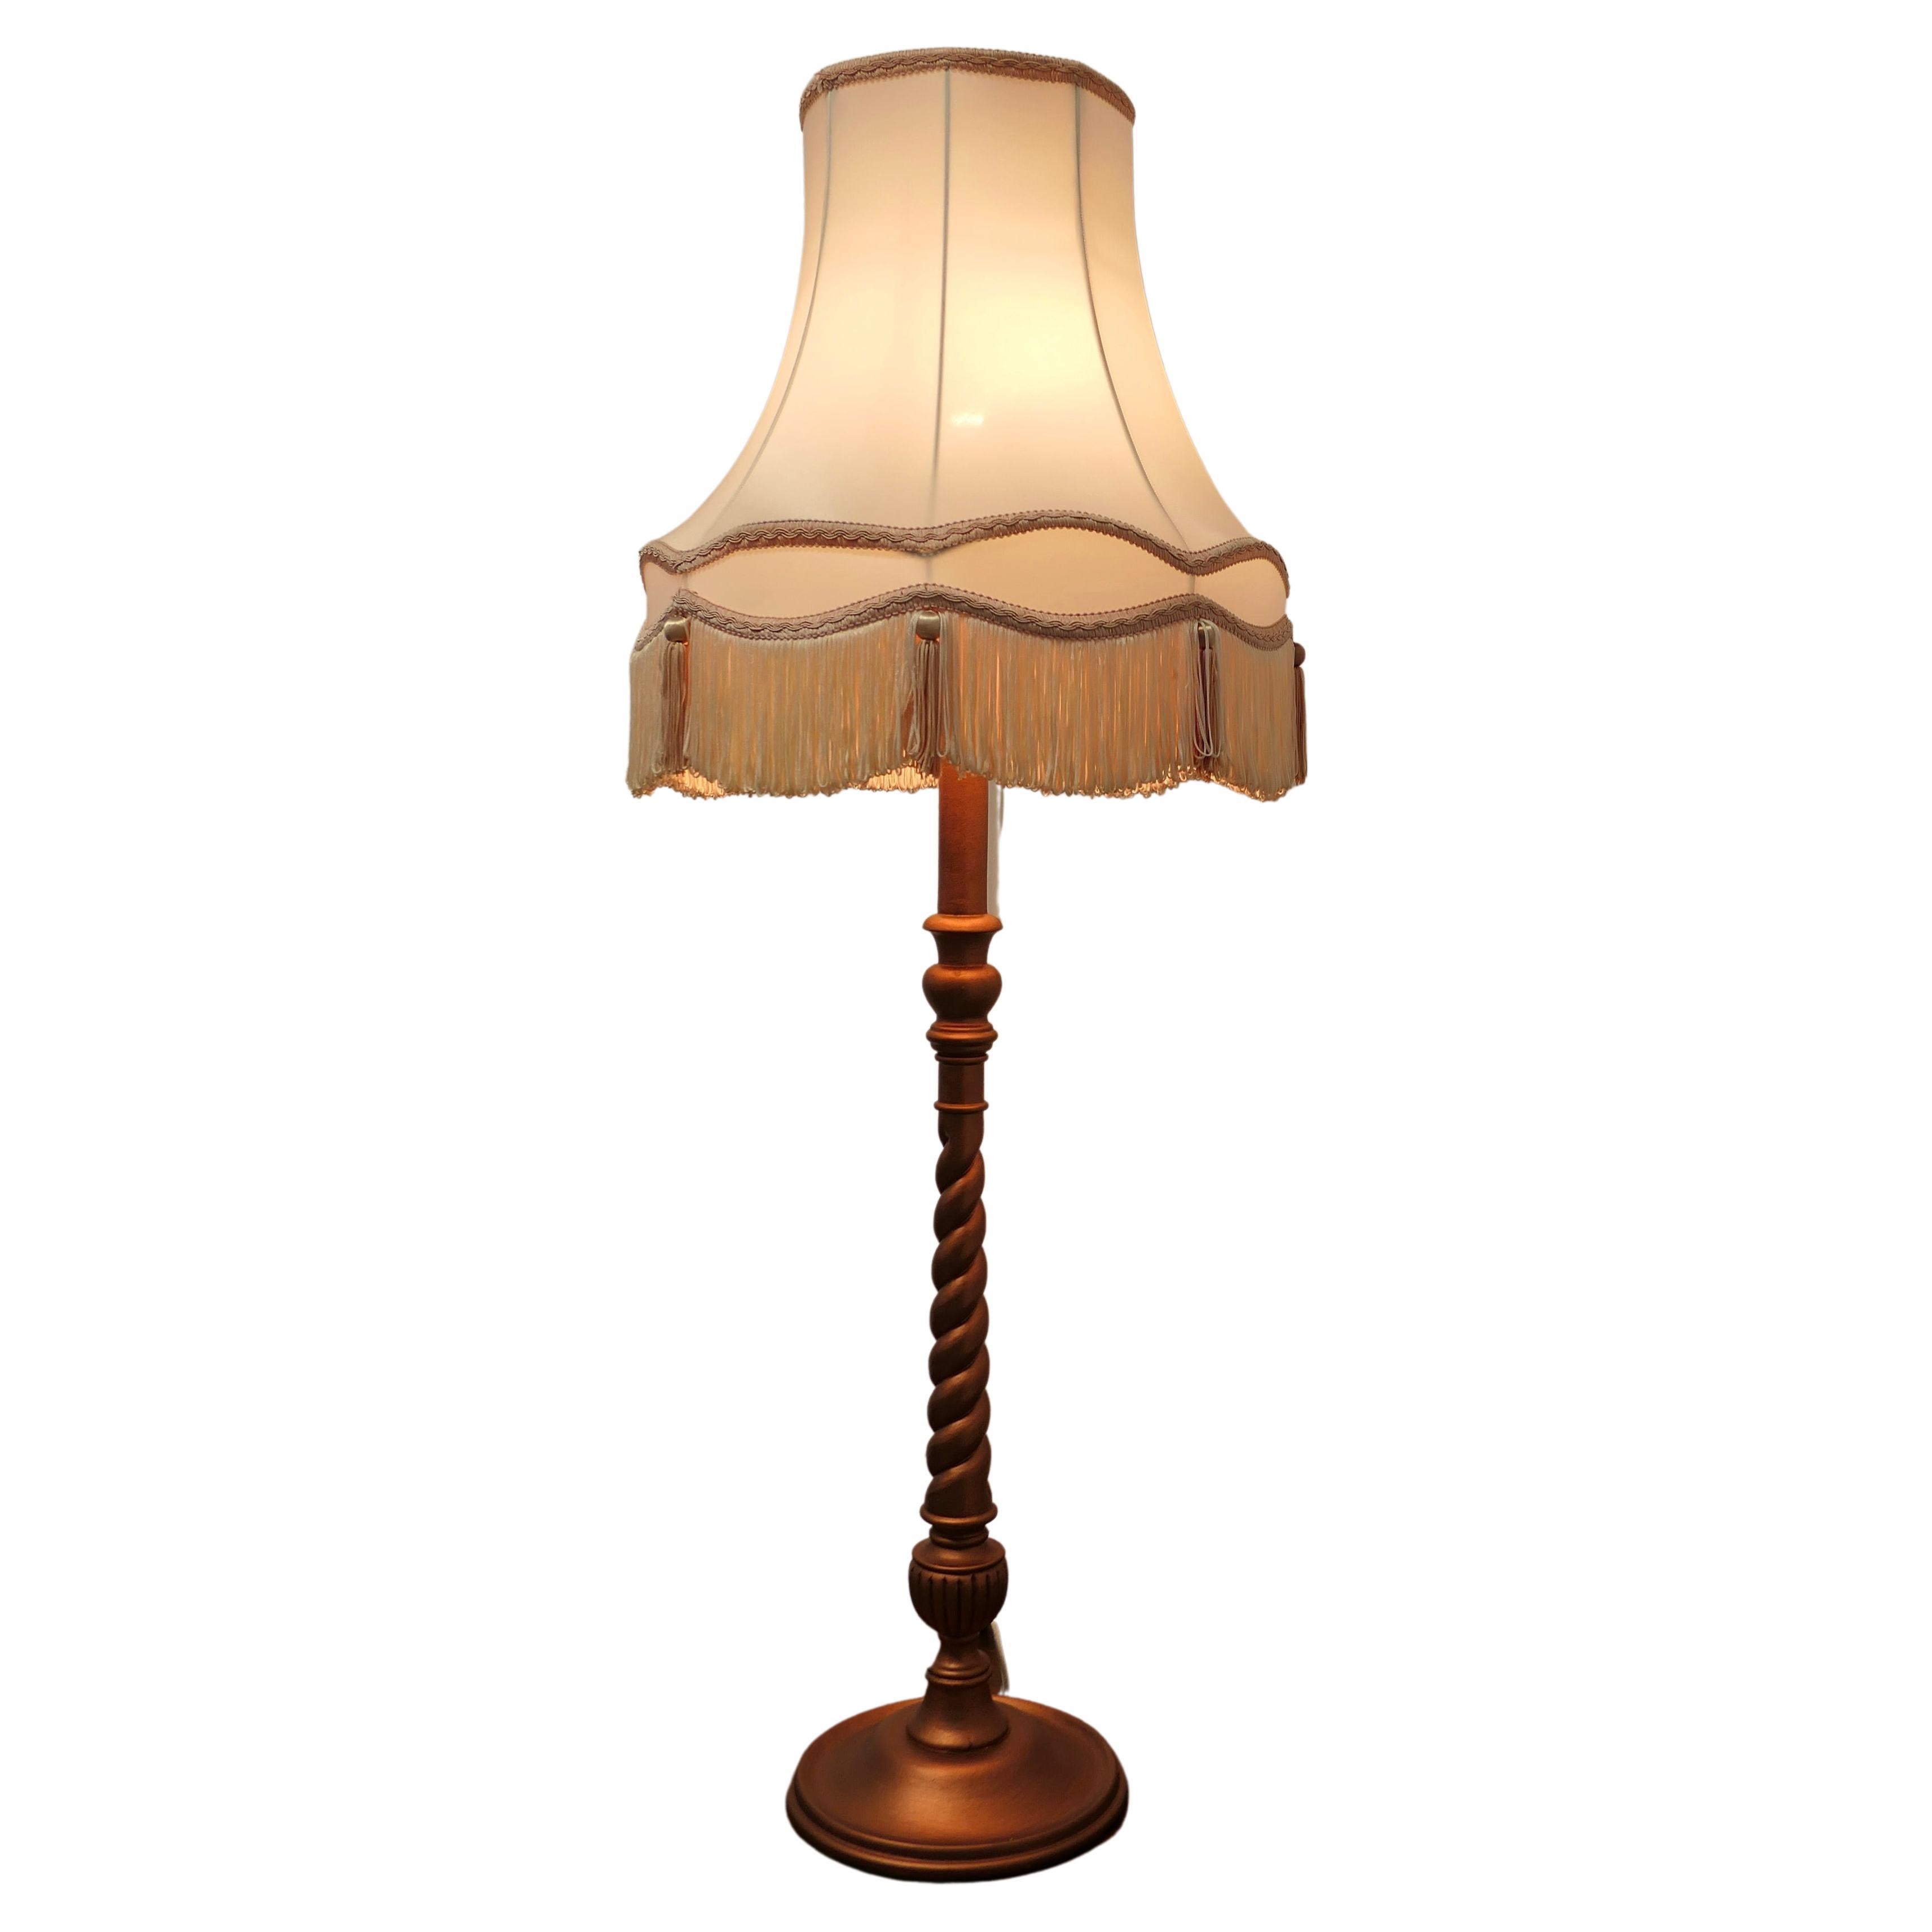 Standard-Halber Standard-Lampe im Arts and Crafts-Stil  Dies ist ein sehr attraktives Stück